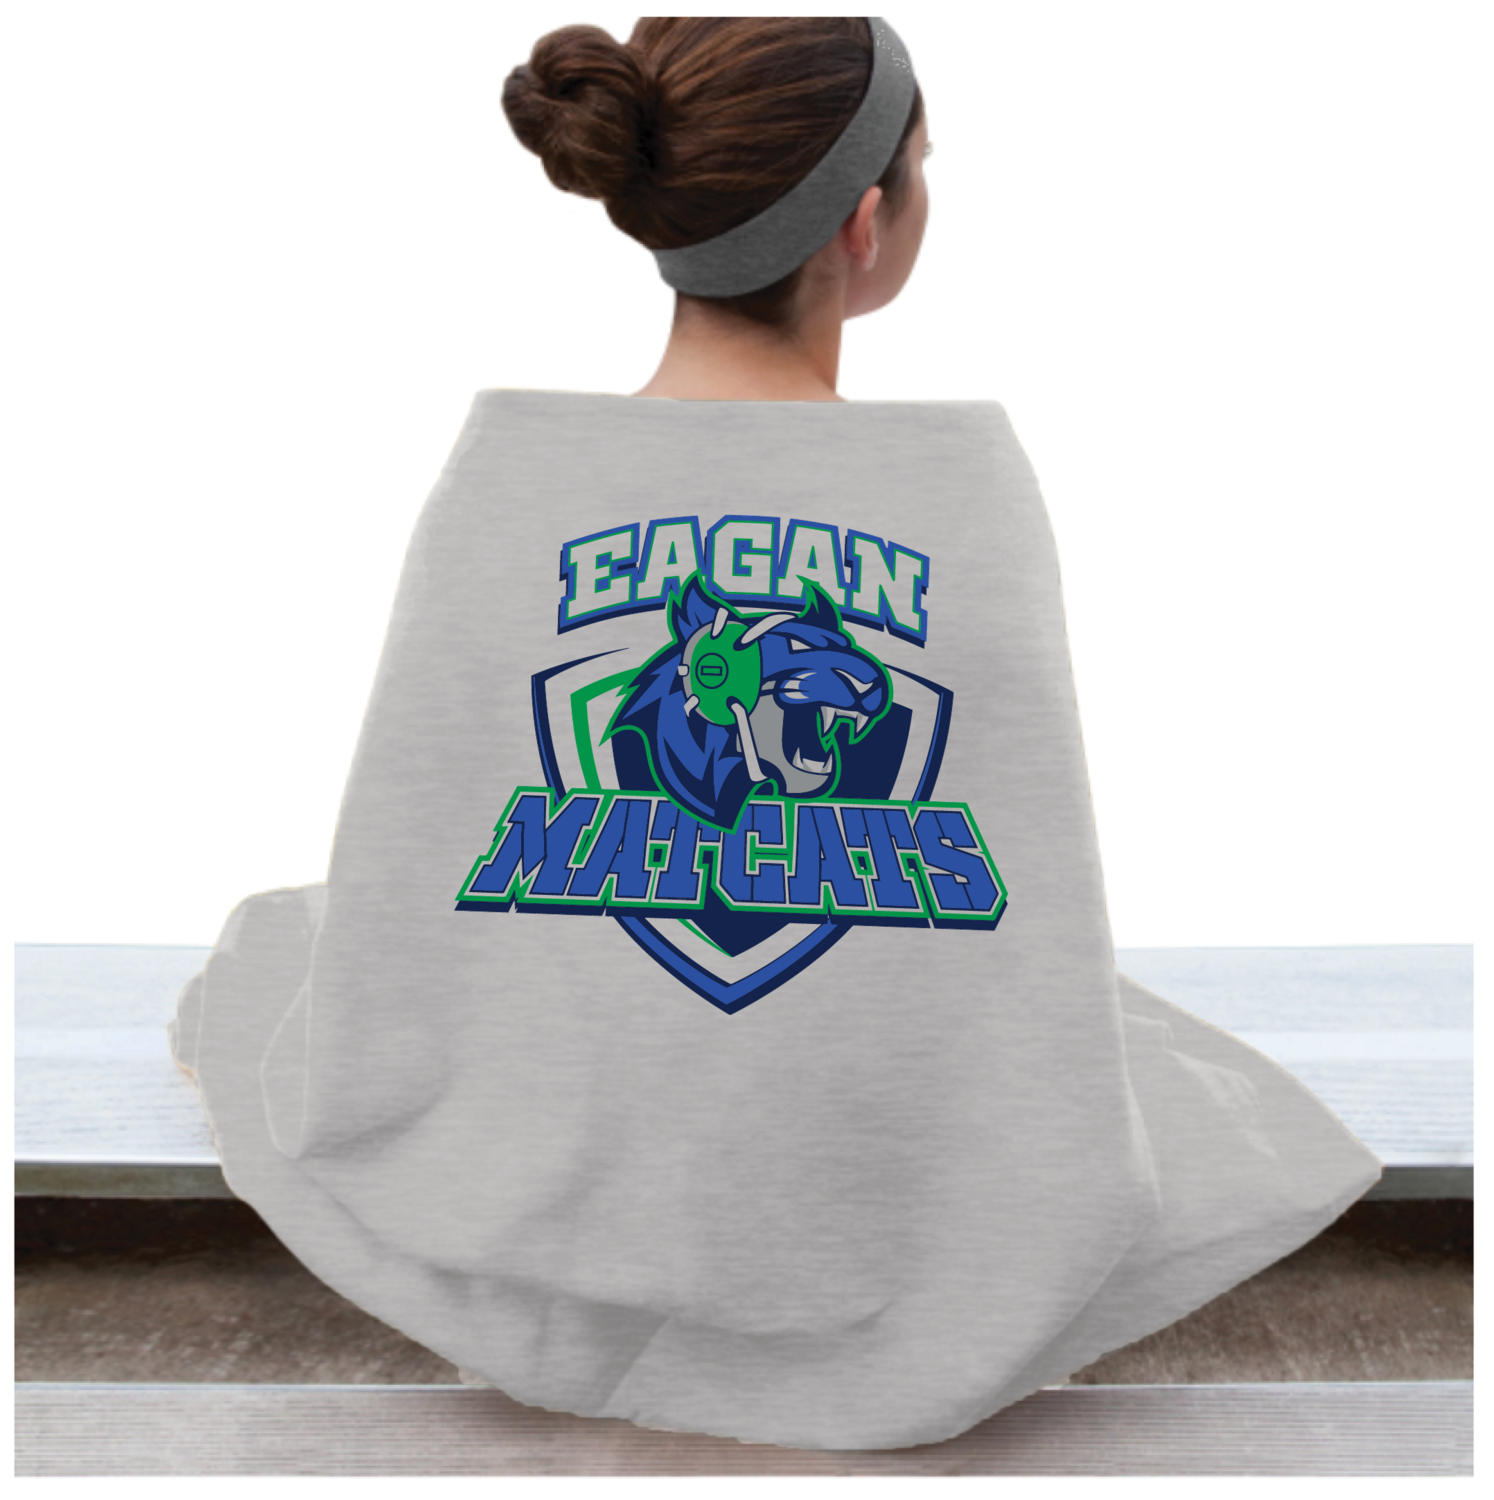 Eagan MatCats Sweatshirt Blanket